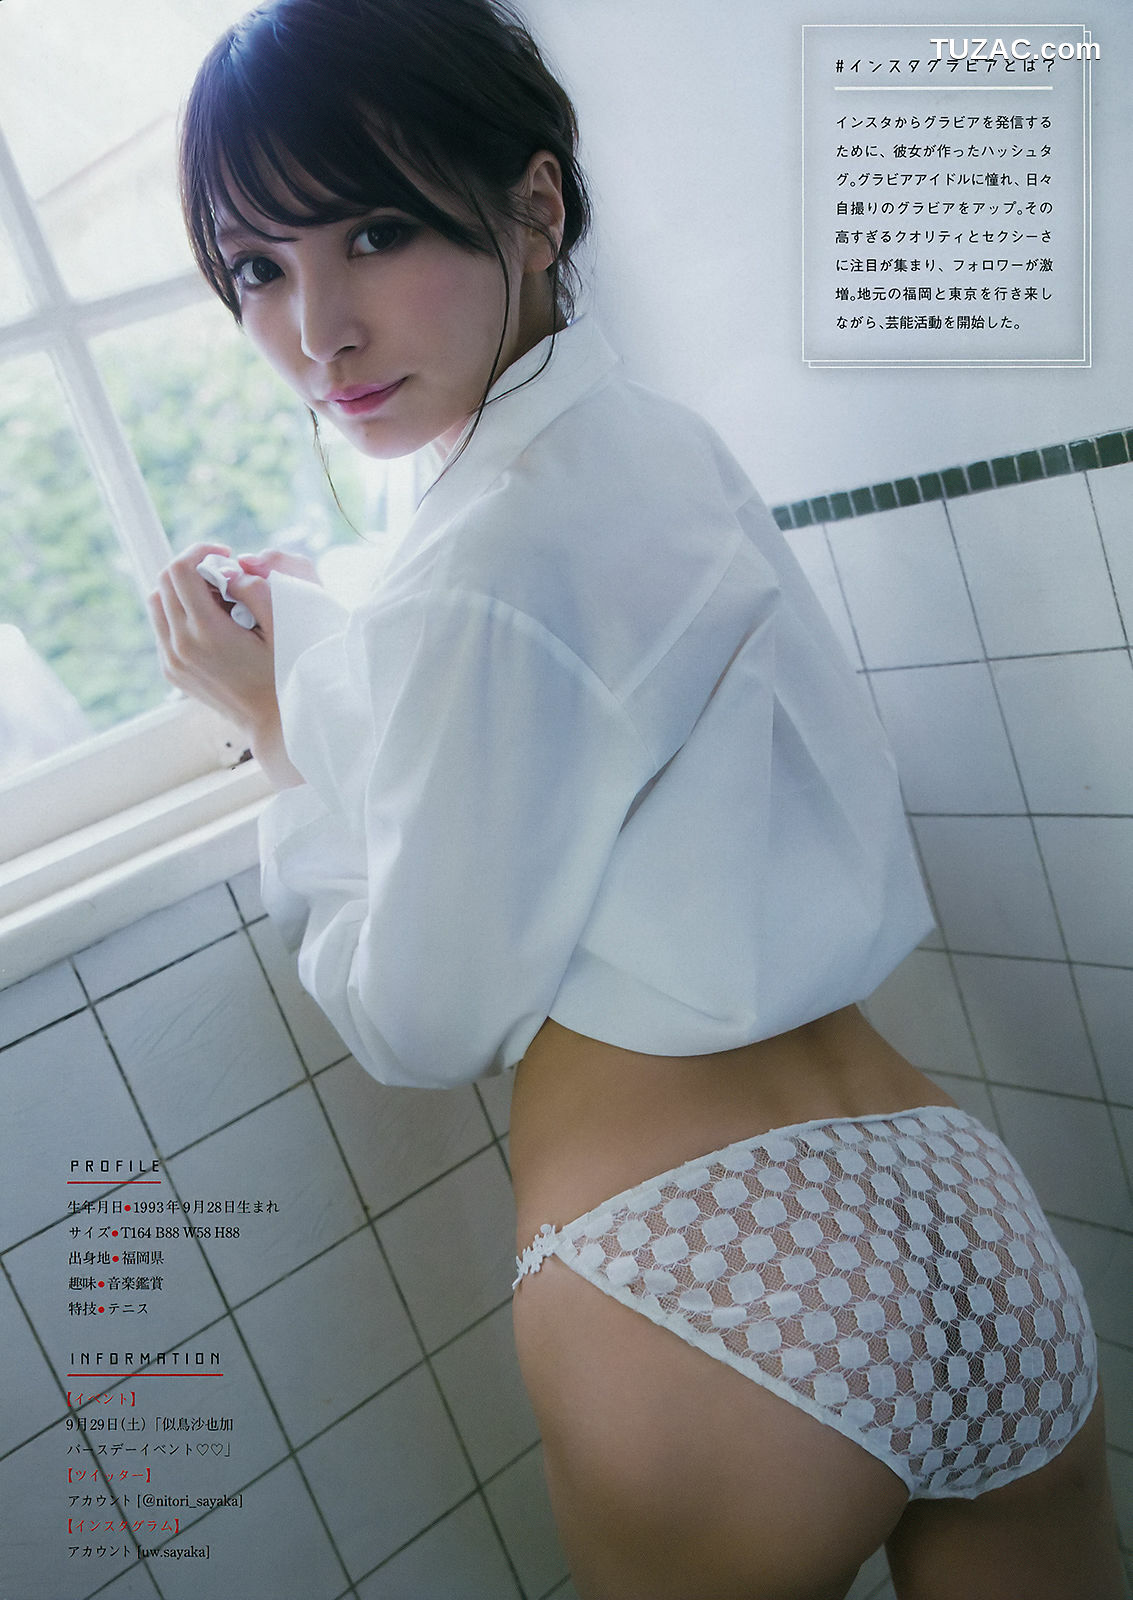 Young Magazine杂志写真_ 小倉優香 似鳥沙也加 2018年No.42 写真杂志[13P]